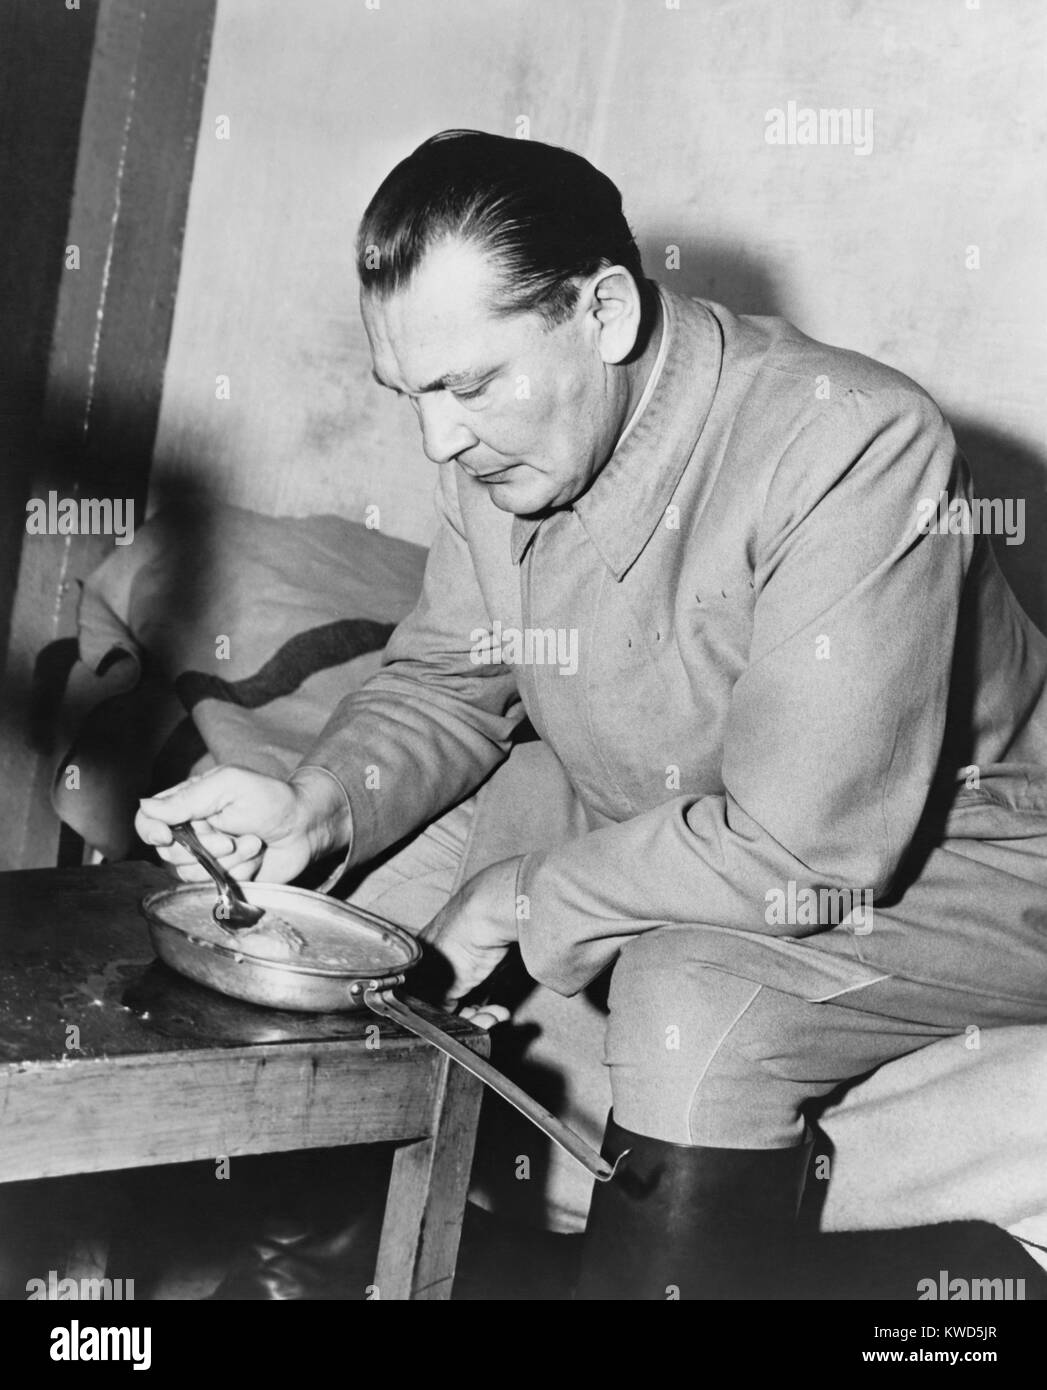 Kriegsverbrecher Hermann Goering essen Mehlsuppe aus einer Metallwanne im Gefängnis. Er war der höchste der Nazis in den Nürnberger Prozessen zu überführt werden. Nov. 1945-Okt. 1946. (BSLOC 2014 13 2) Stockfoto